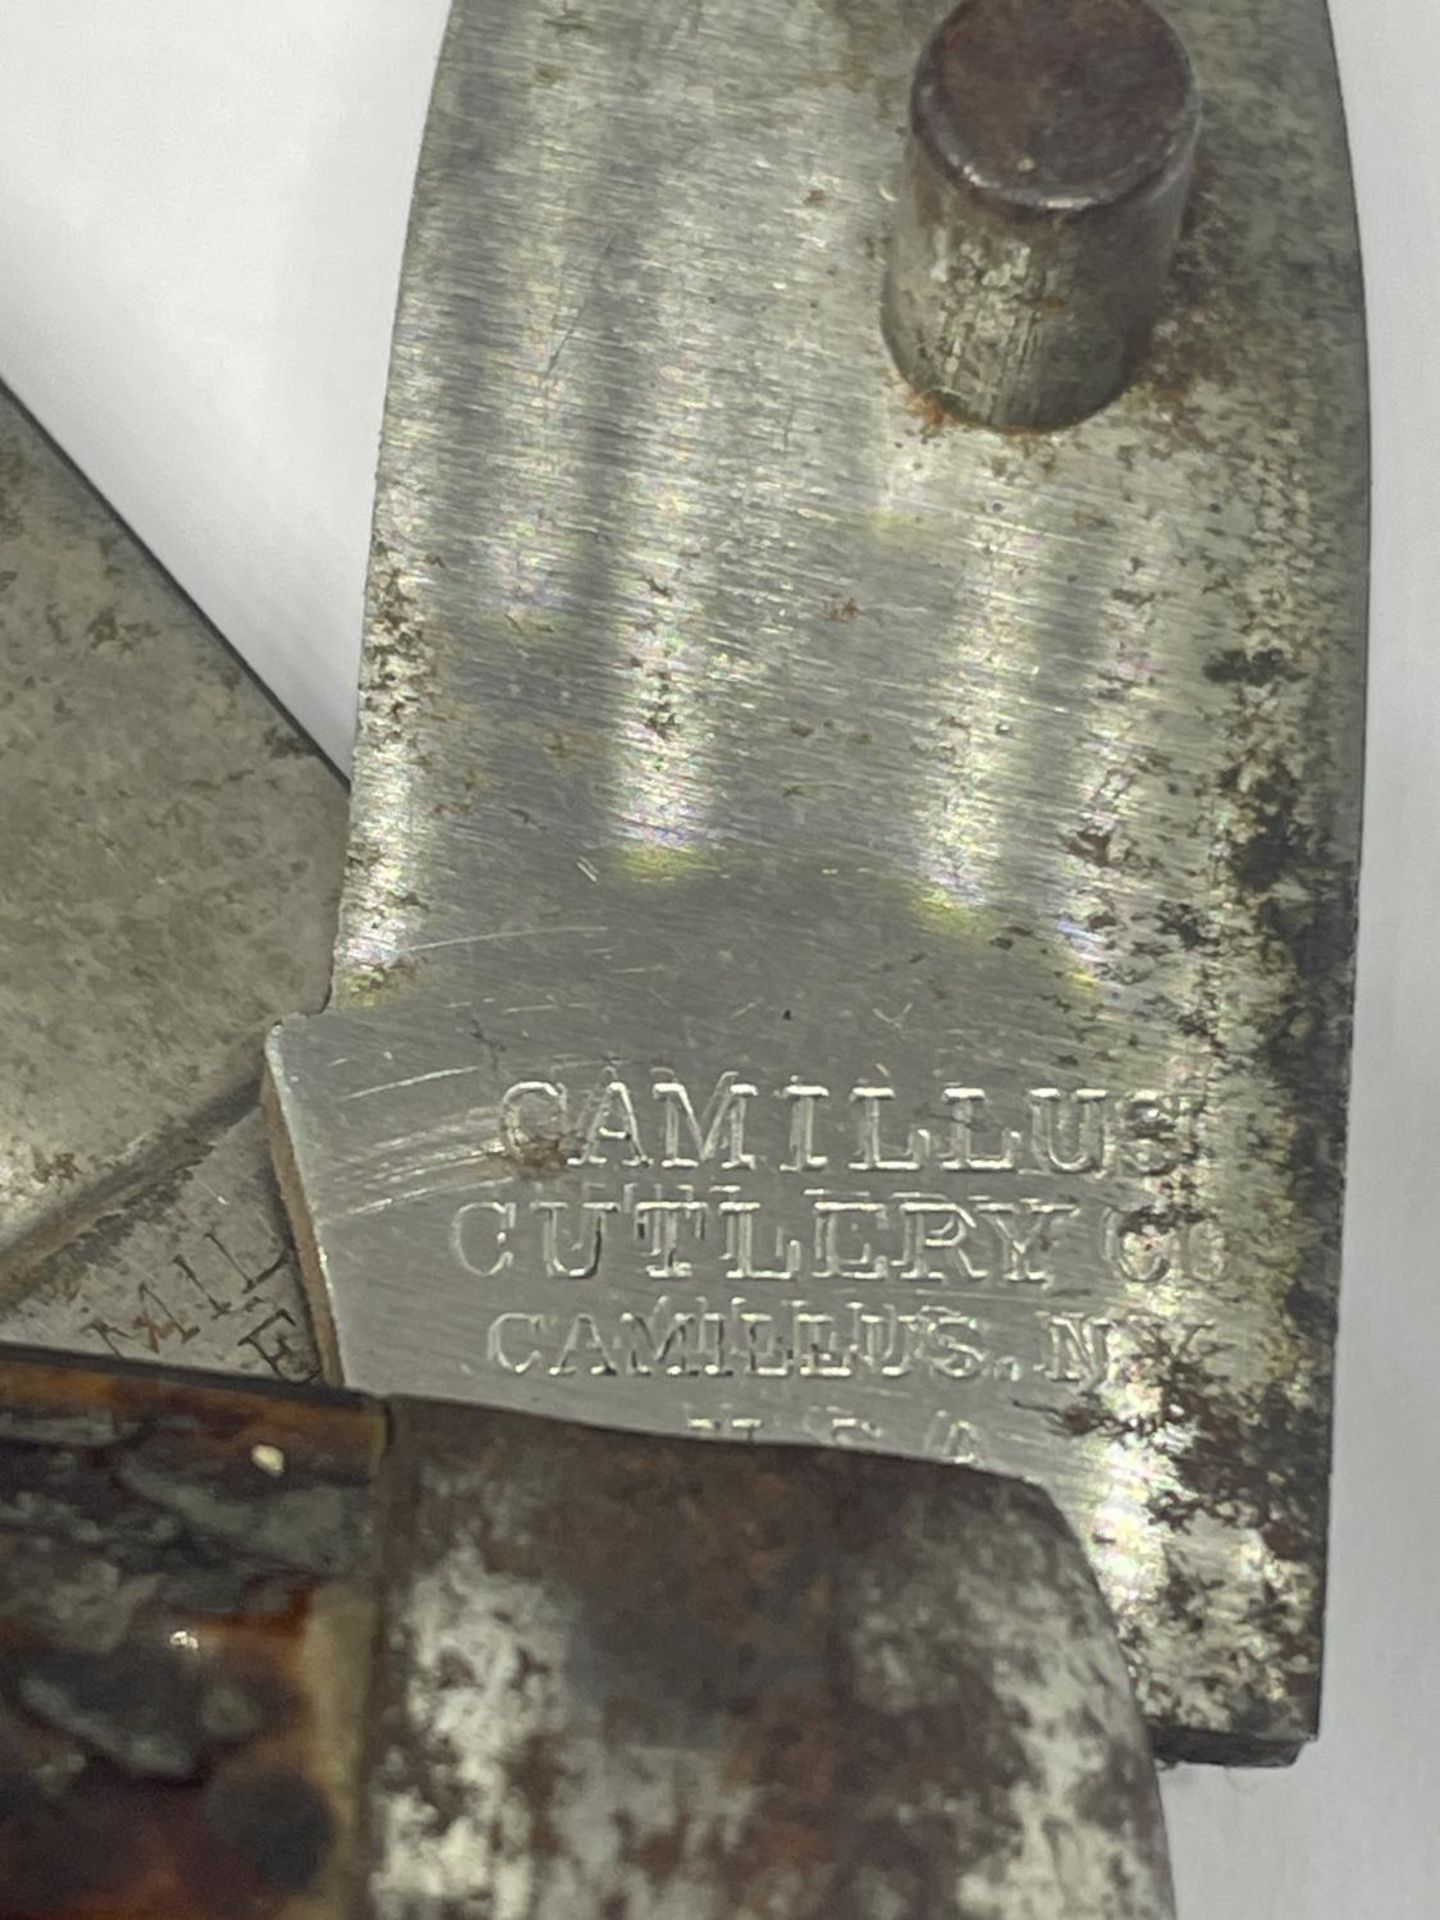 A CAMILLUS NY KNIFE - Image 3 of 4